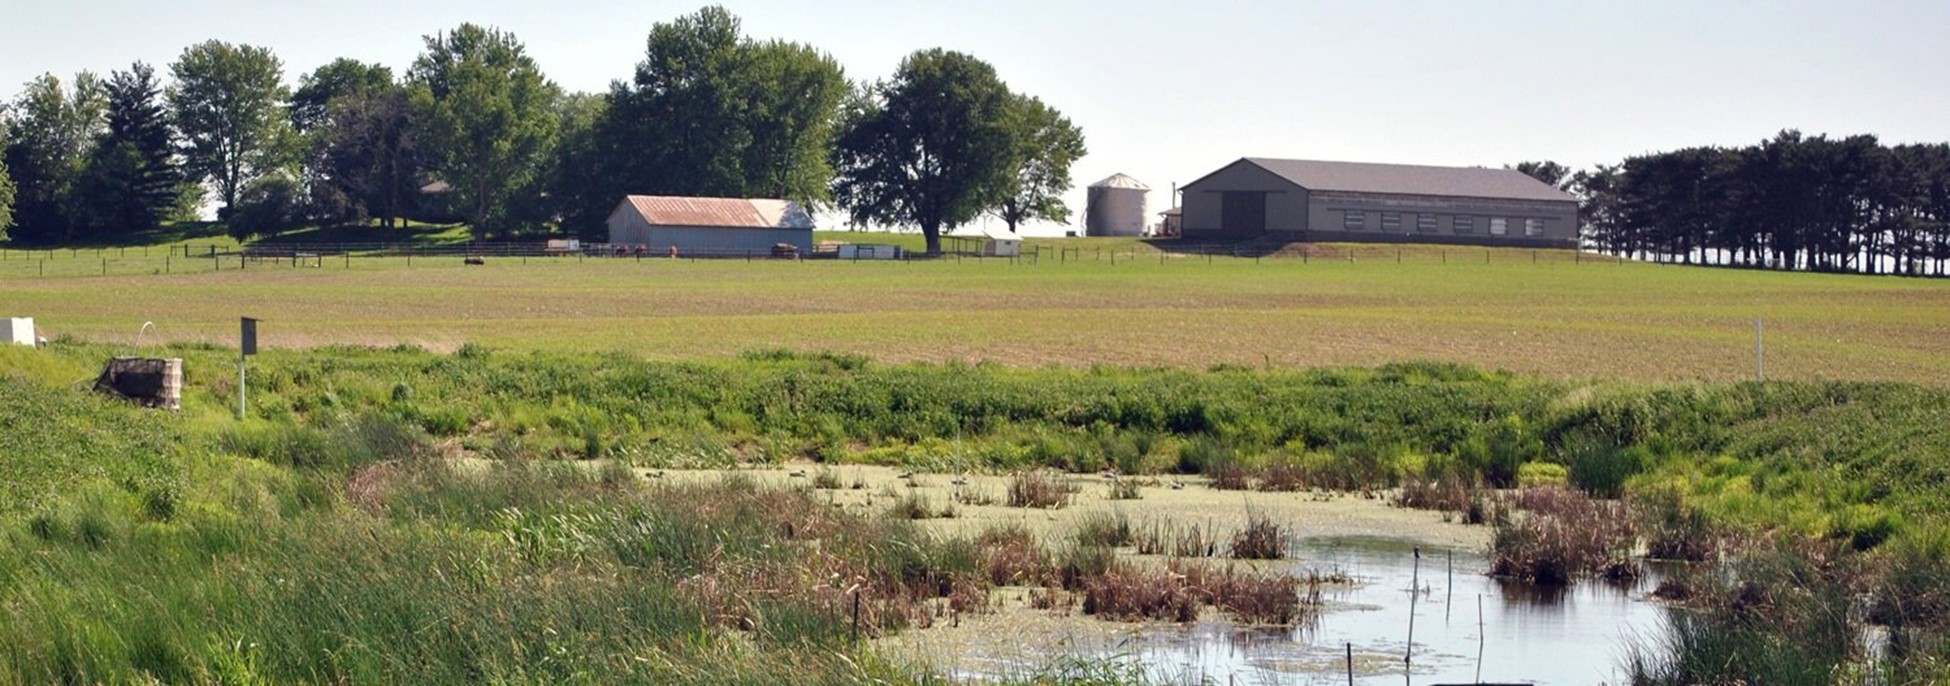 Wetland by barn